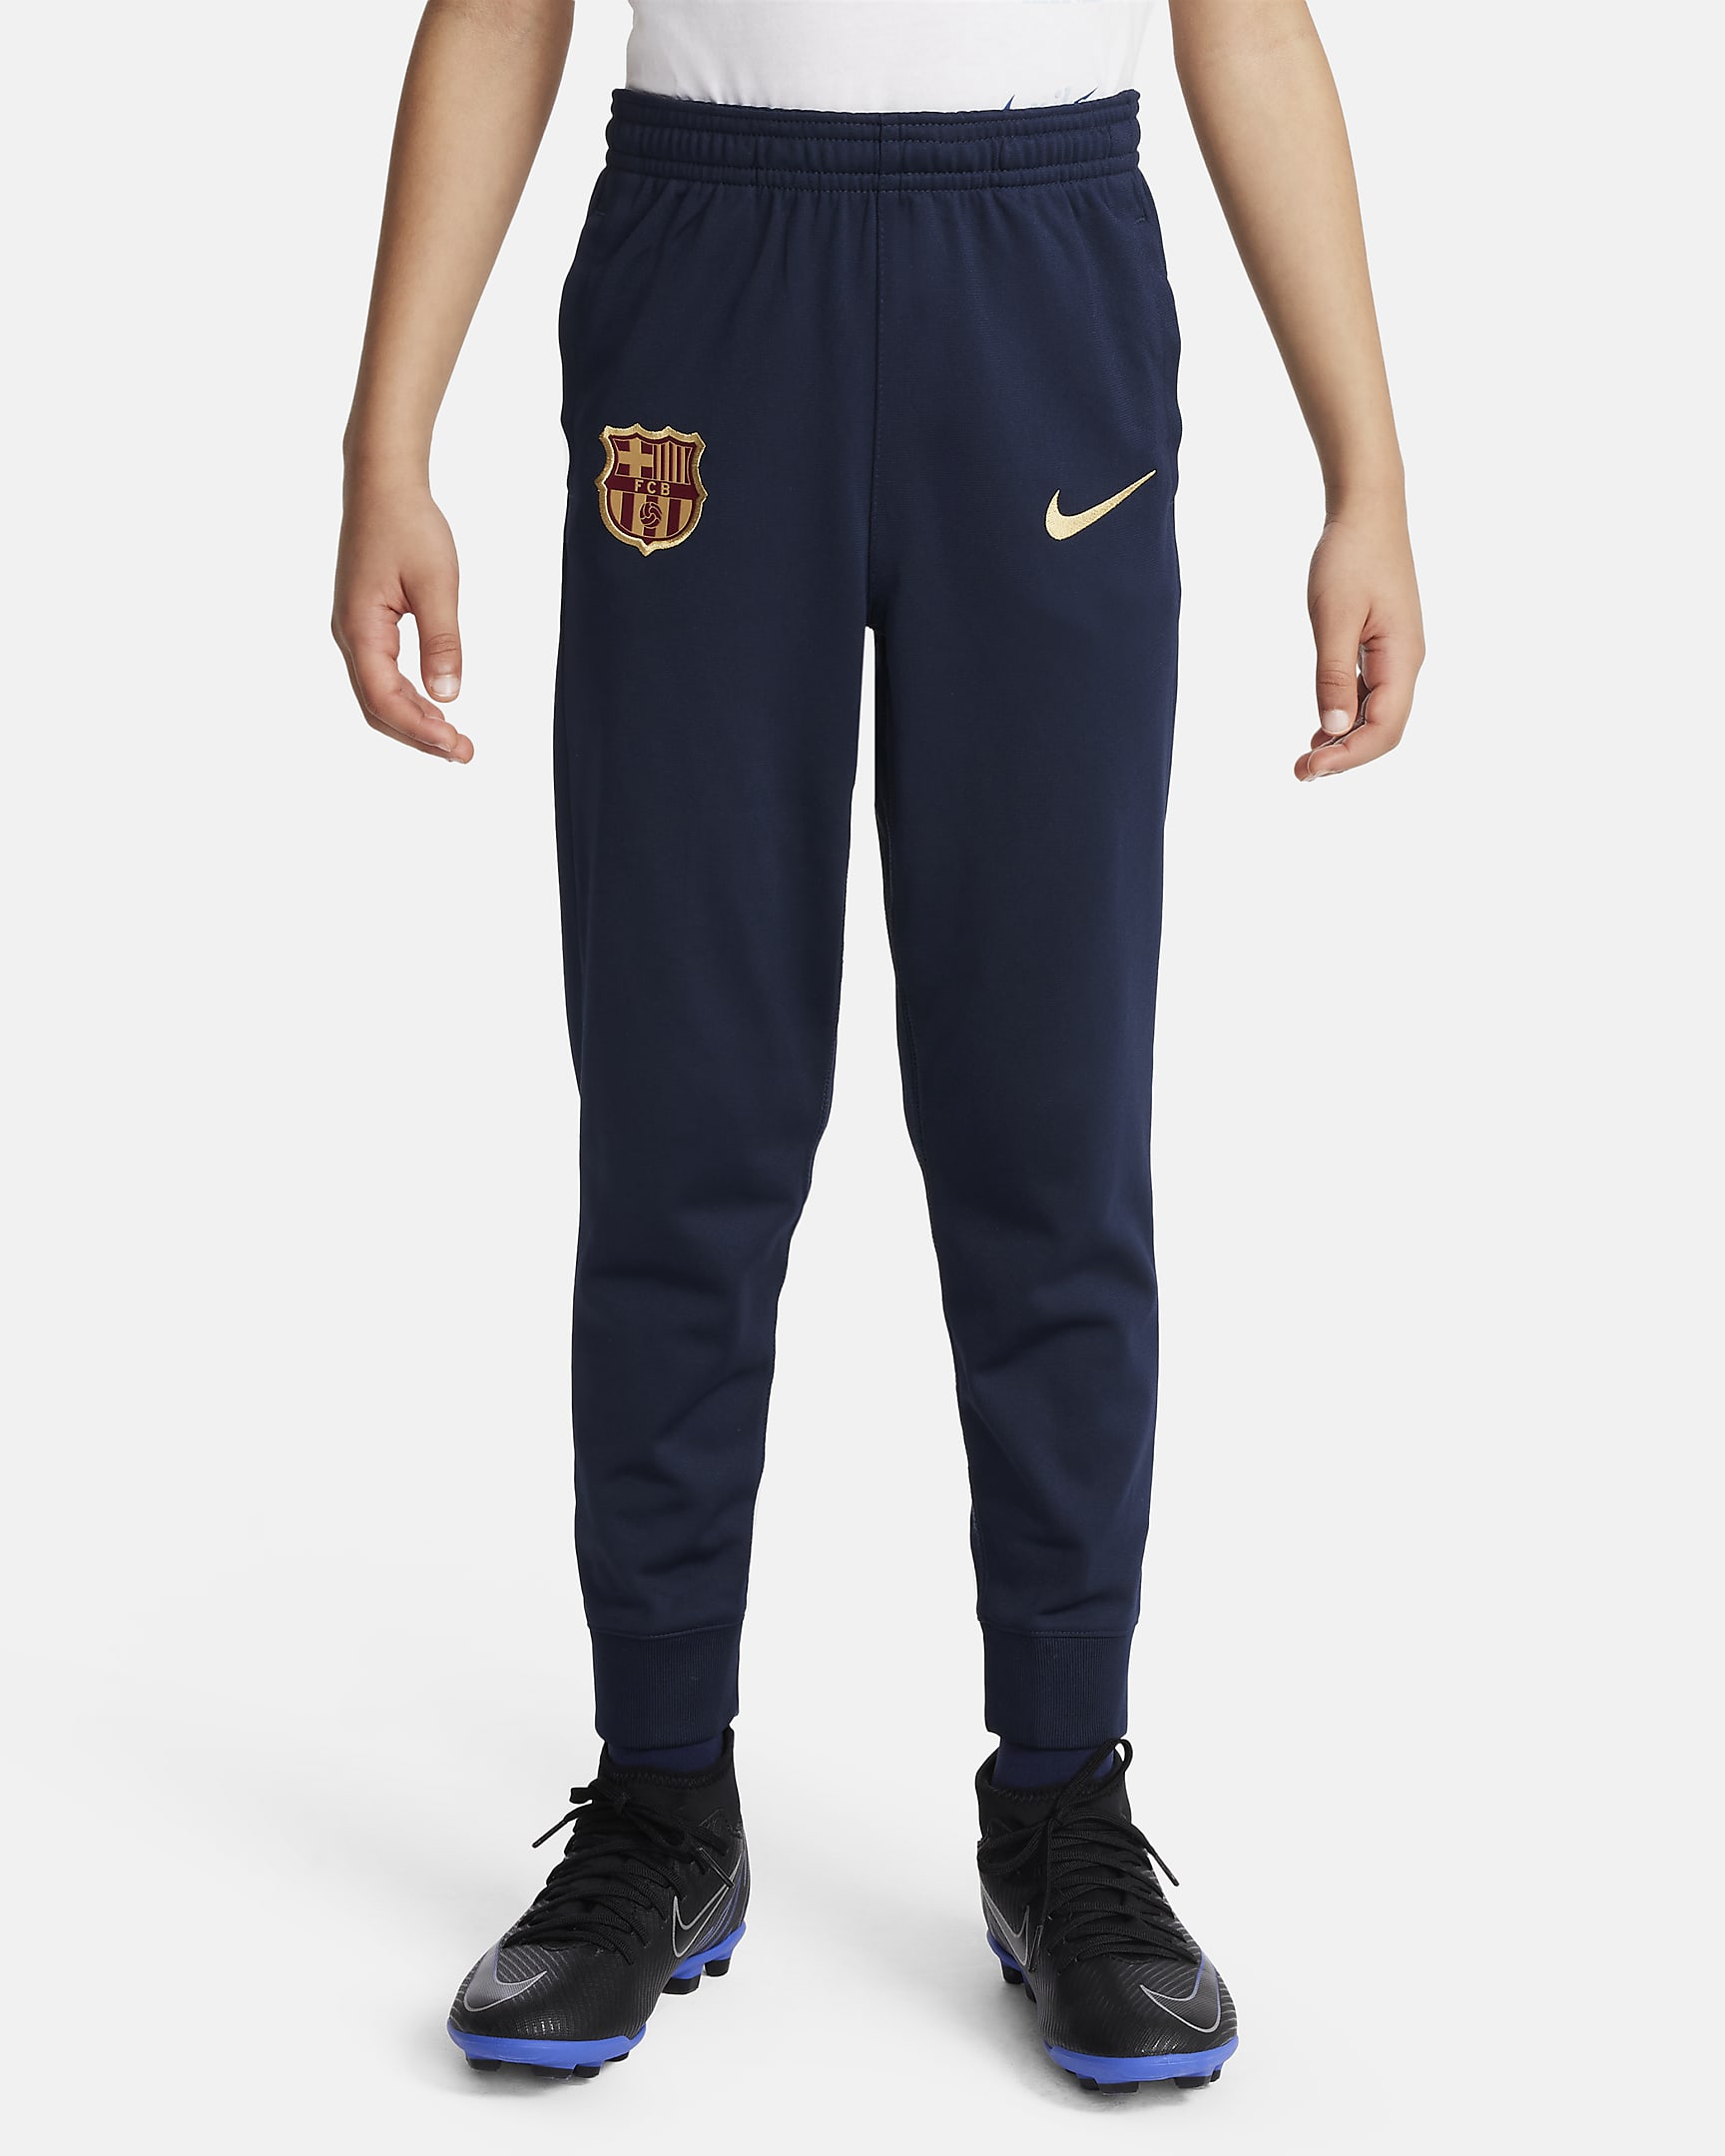 FC Barcelona Strike Nike Dri-FIT strikket fotballtracksuit til små barn - Noble Red/Deep Royal Blue/Obsidian/Club Gold